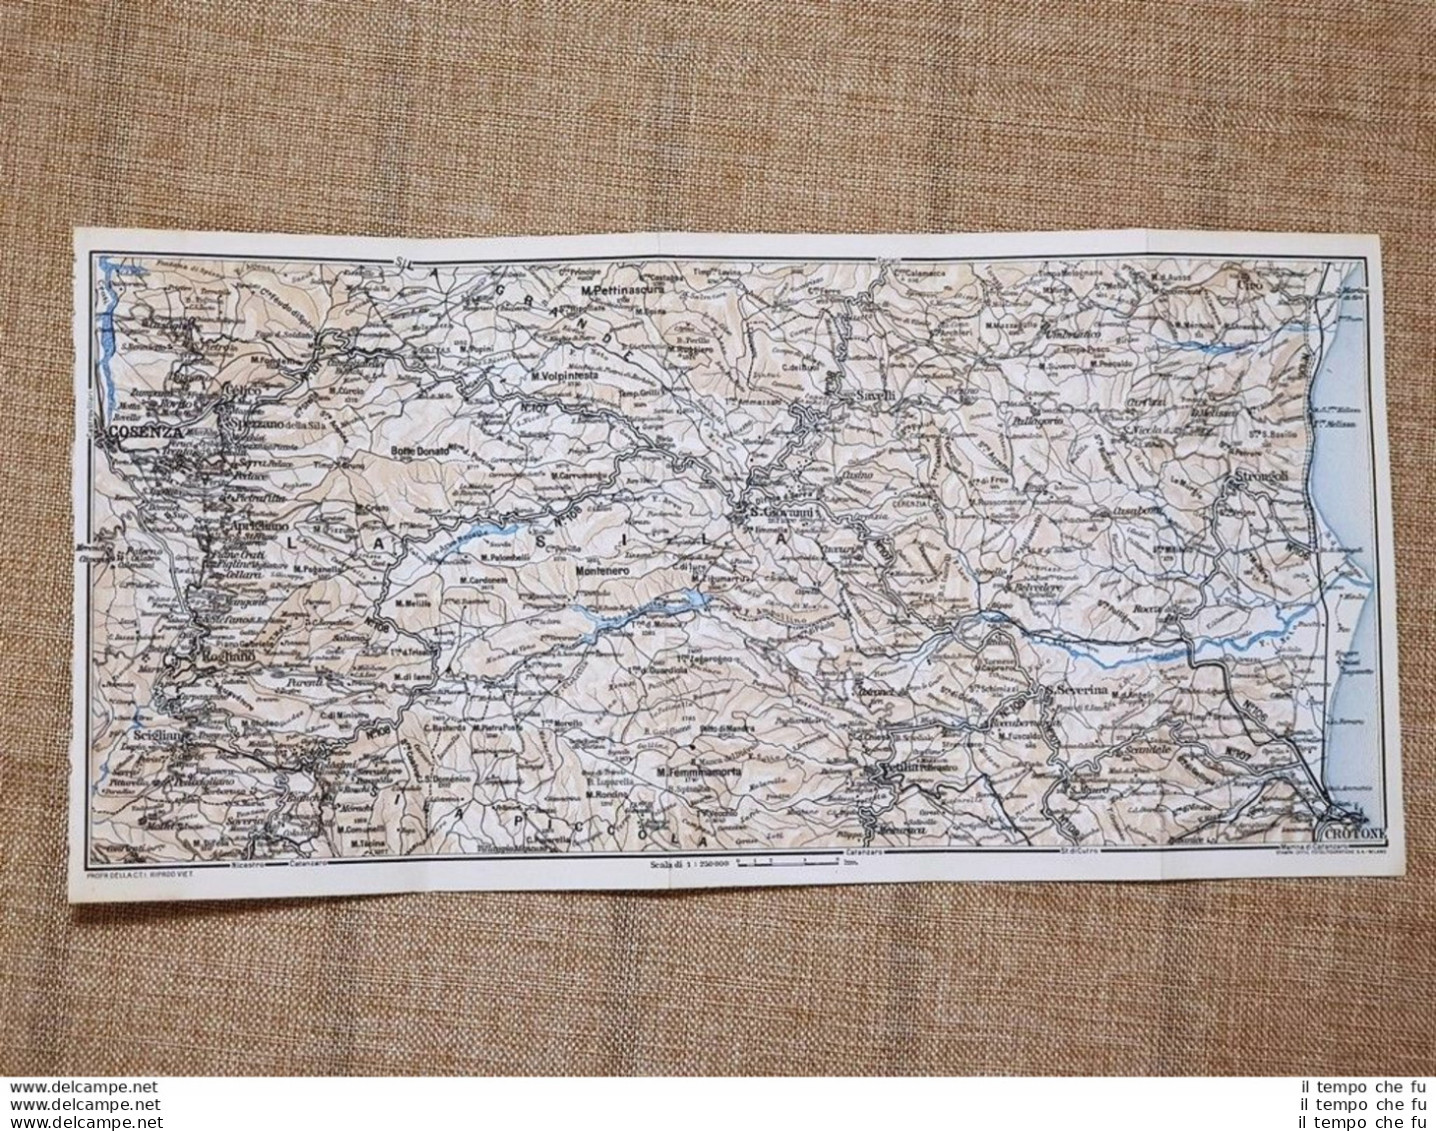 Carta Geografica O Mappa Del 1937 Crotone Montenero Cosenza Calabria T.C.I. - Carte Geographique